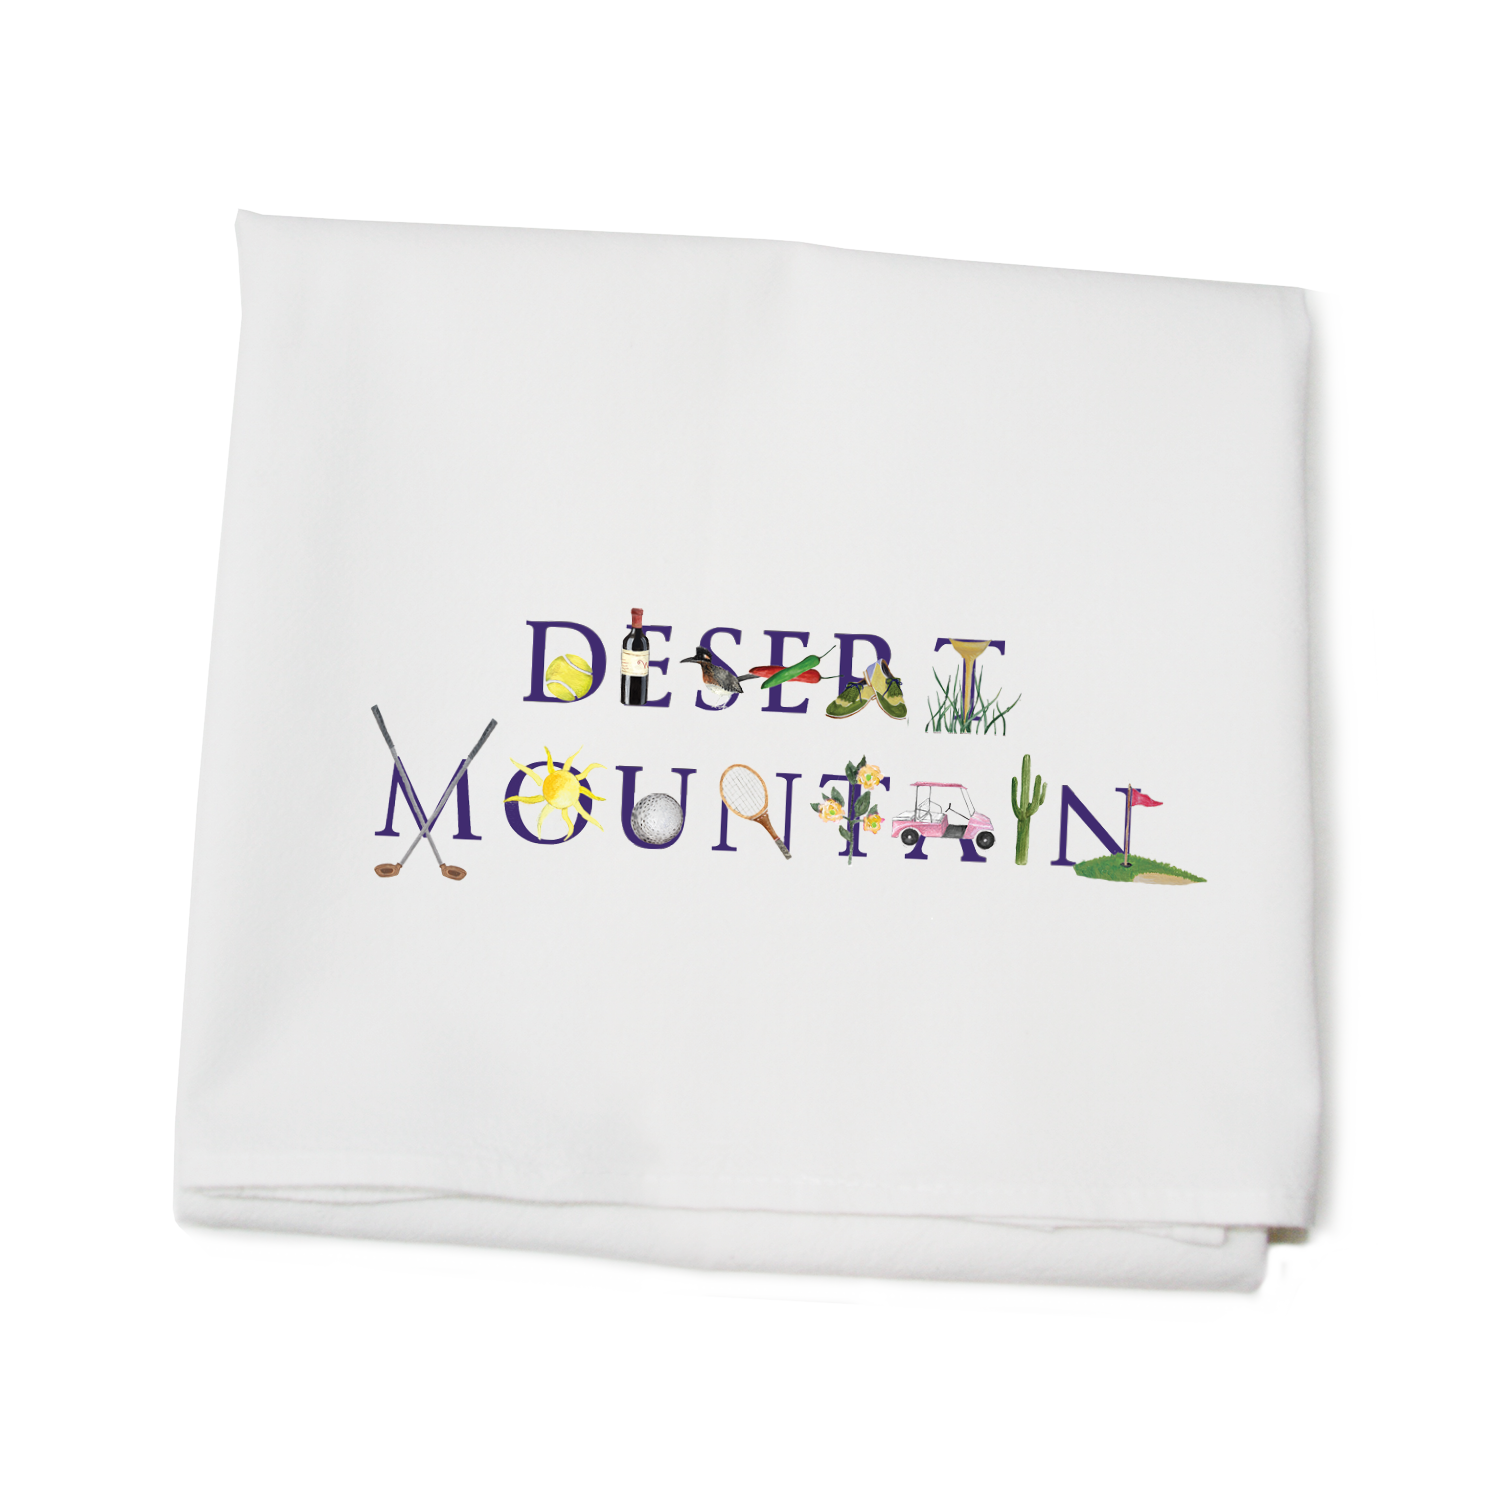 desert mountain flour sack towel